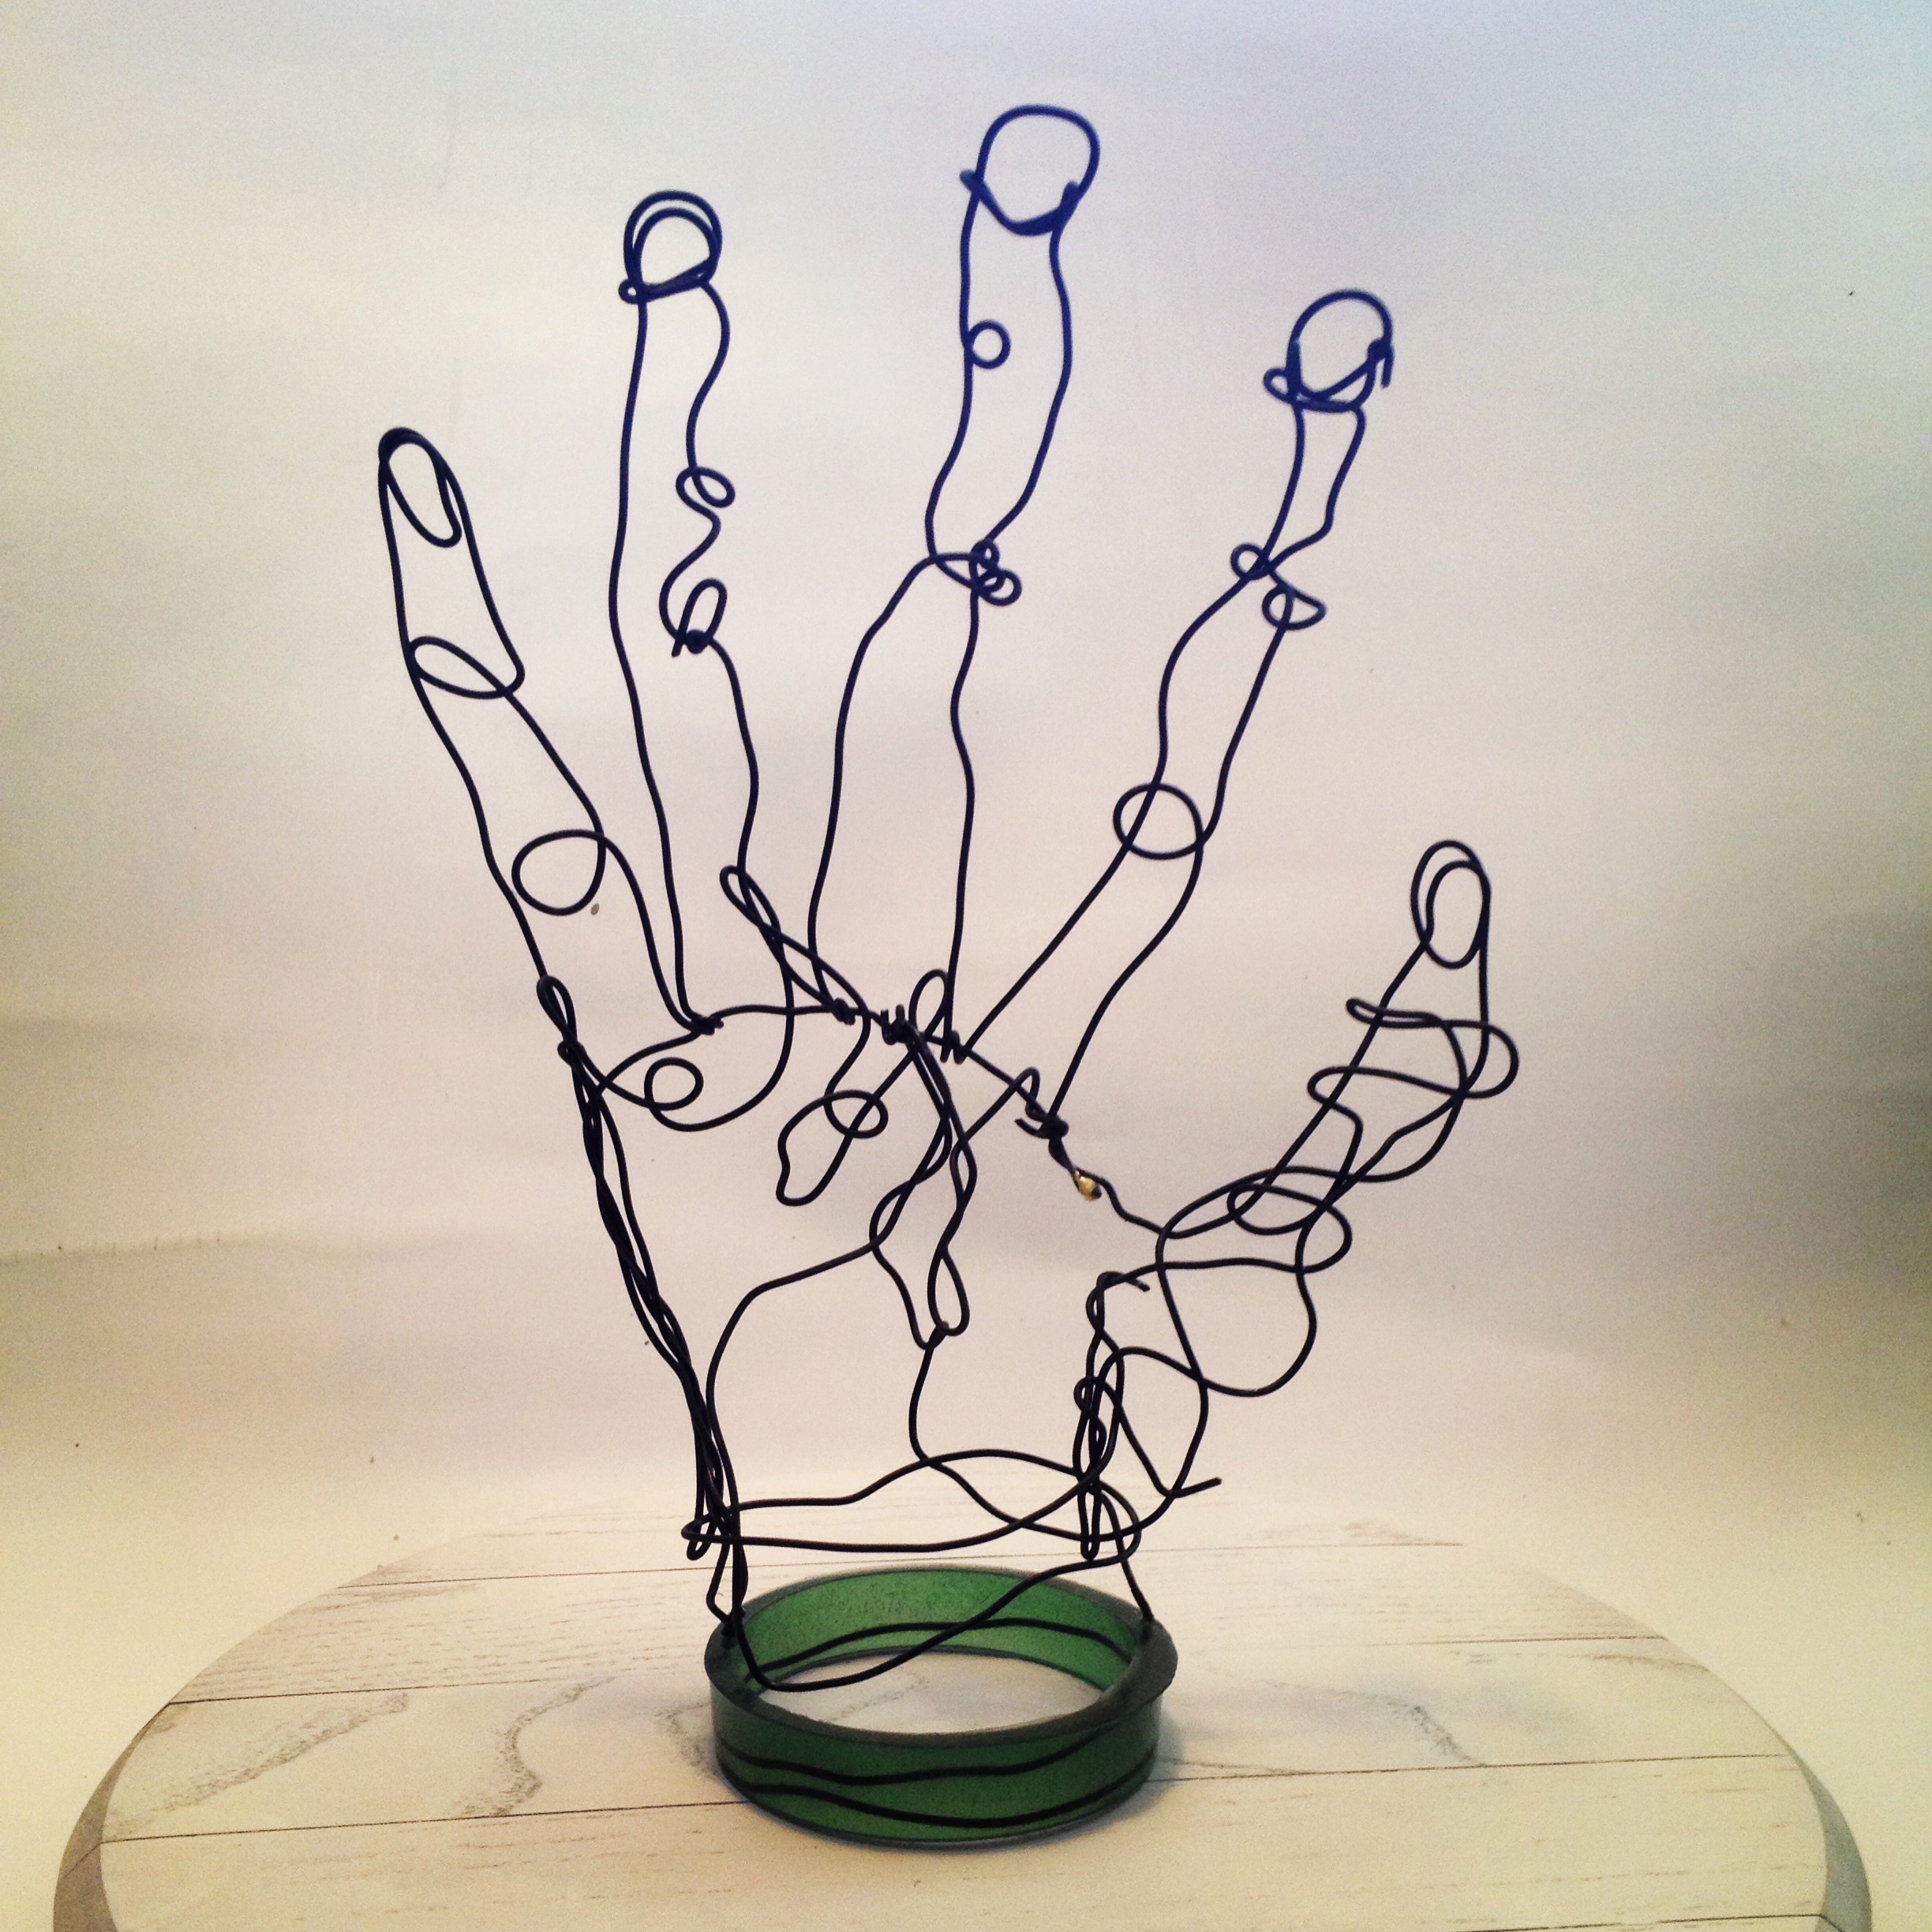 DIY Wire Sculpture Twist Kits, Wire Art